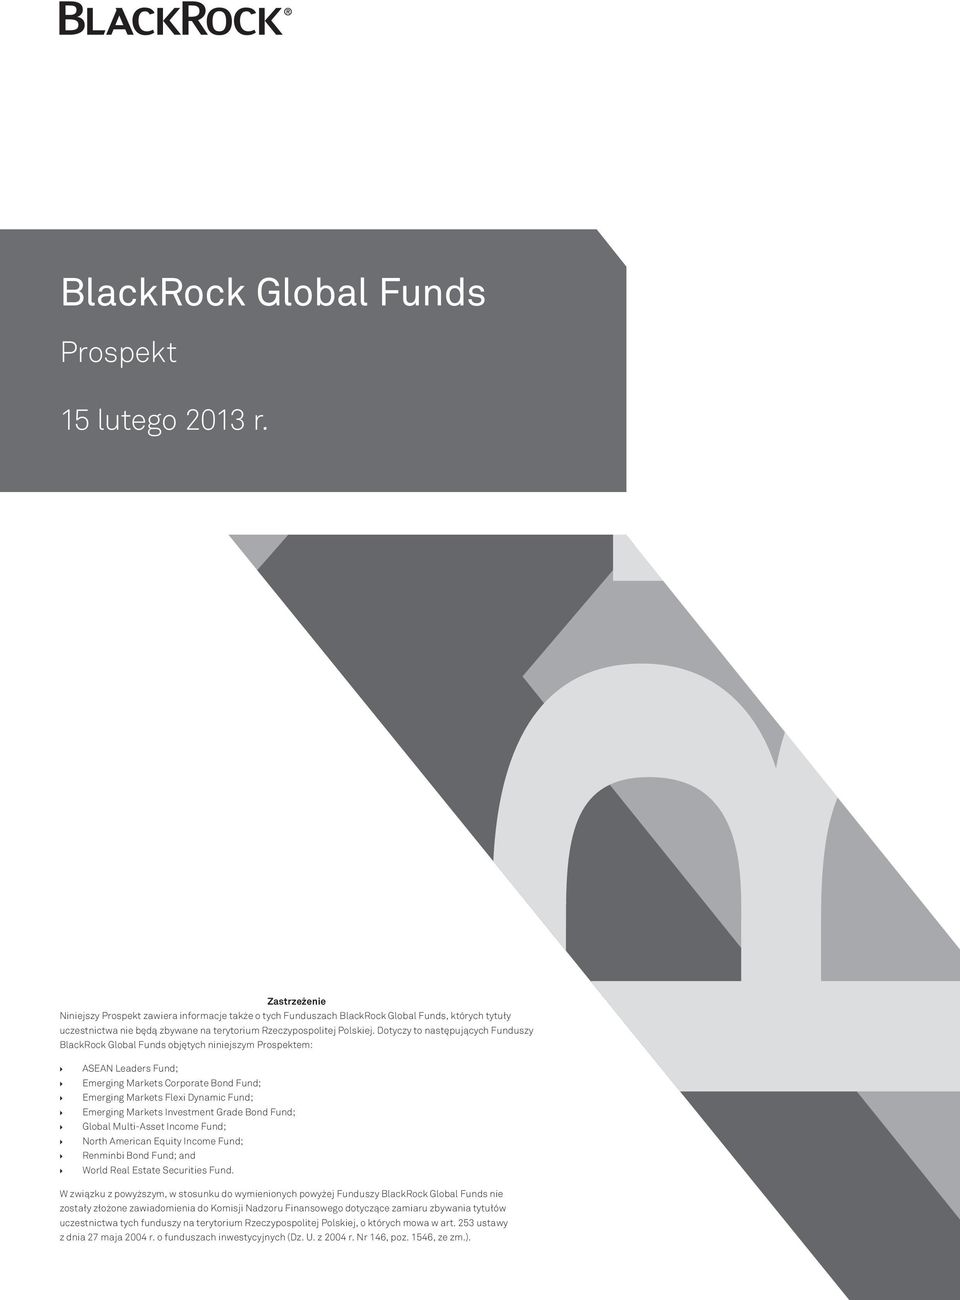 Dotyczy to następujących Funduszy BlackRock Global Funds objętych niniejszym Prospektem: ASEAN Leaders Fund; Emerging Markets Corporate Bond Fund; Emerging Markets Flexi Dynamic Fund; Emerging